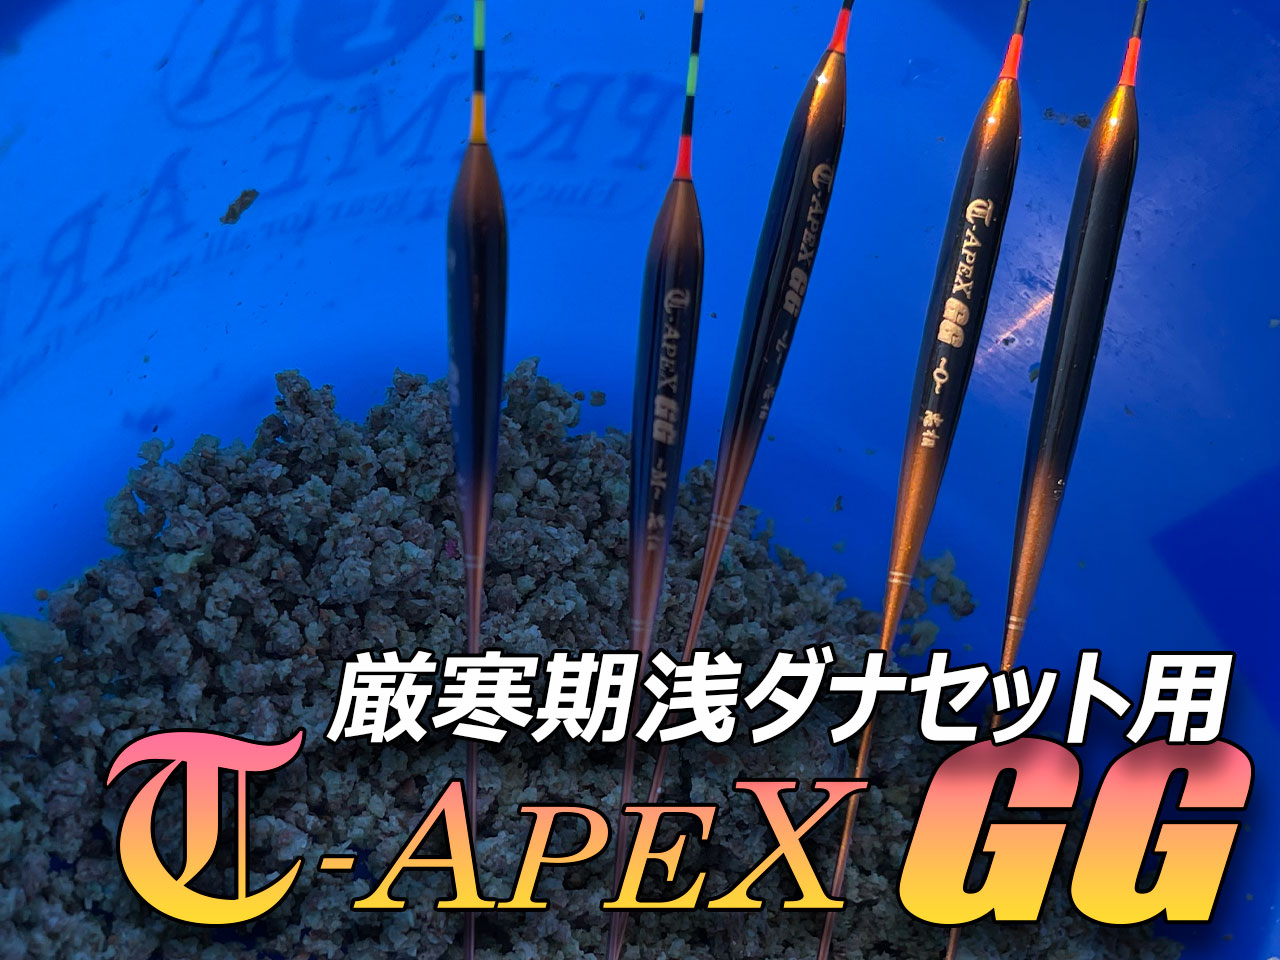 T-APEX GG